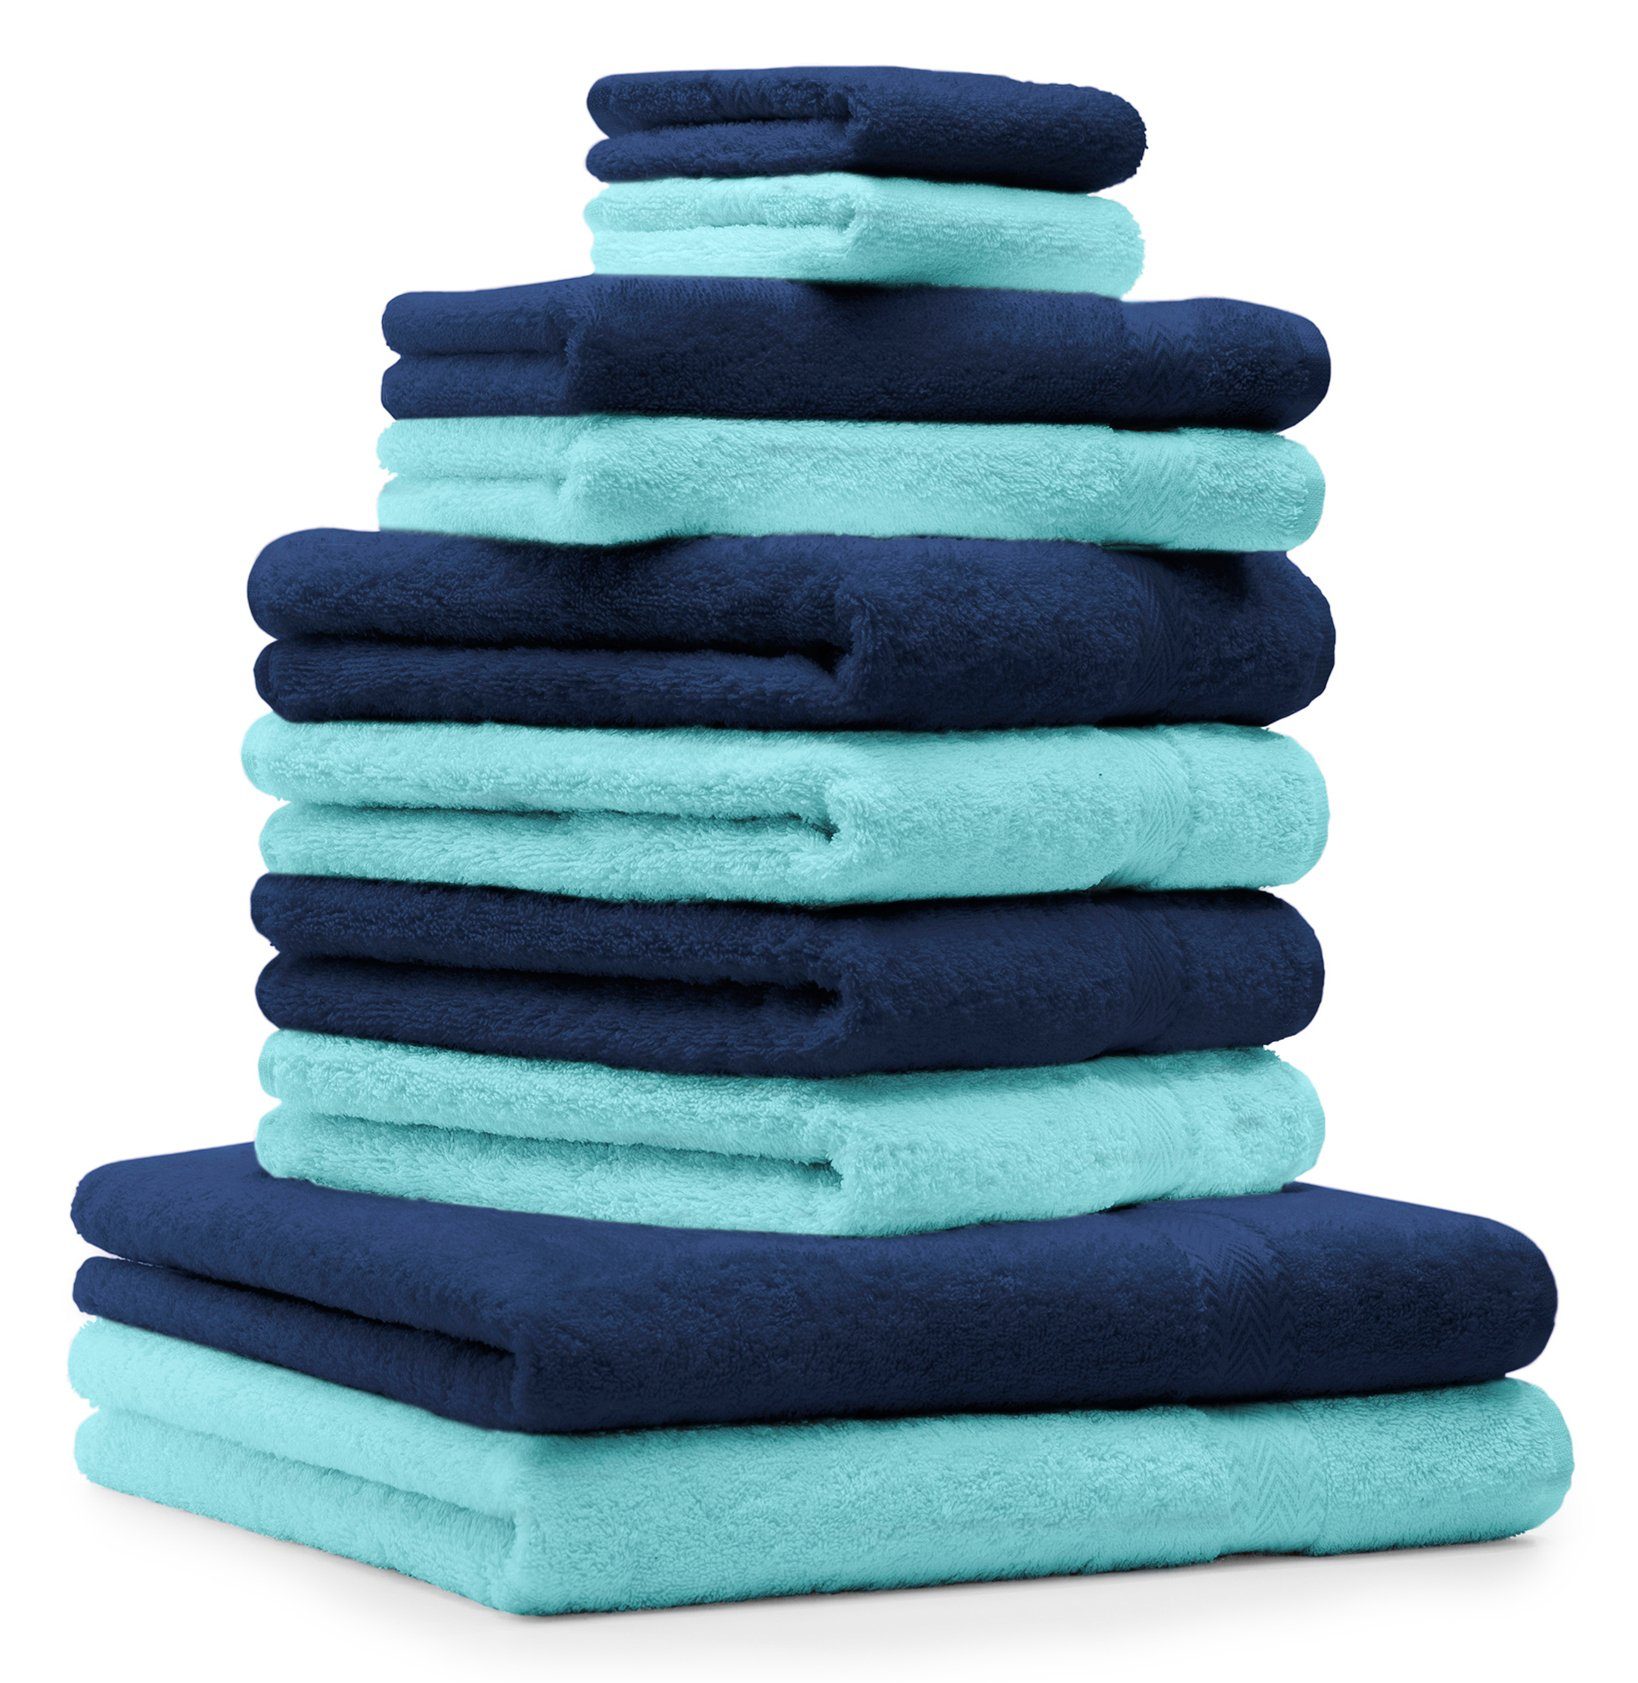 Betz Handtuch und 10-TLG. Set 100% türkis, dunkelblau Farbe Classic Baumwolle Handtücher-Set